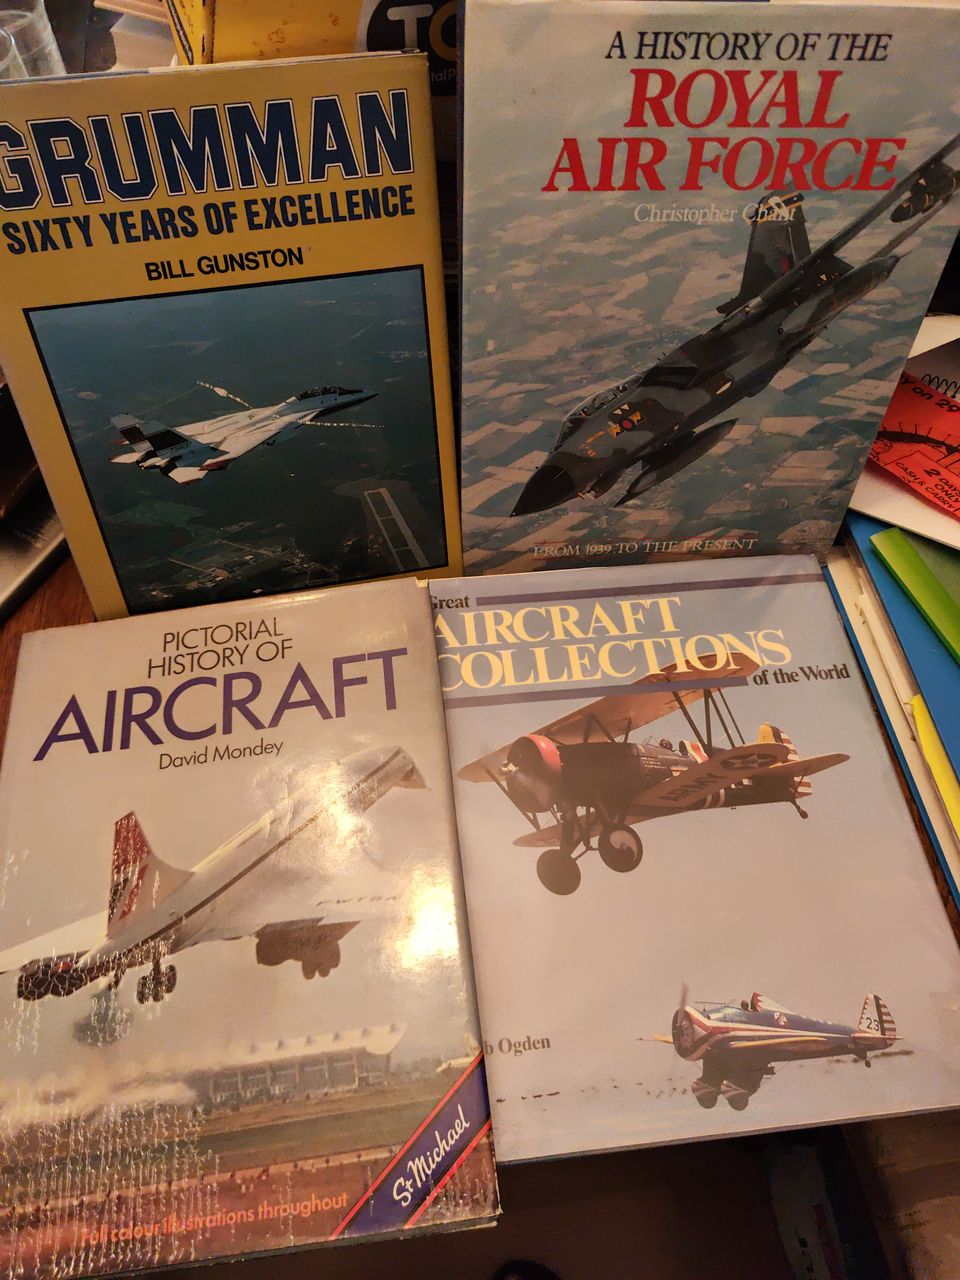 Grumman-Royal air force -Aircraft Collection -Aircraft